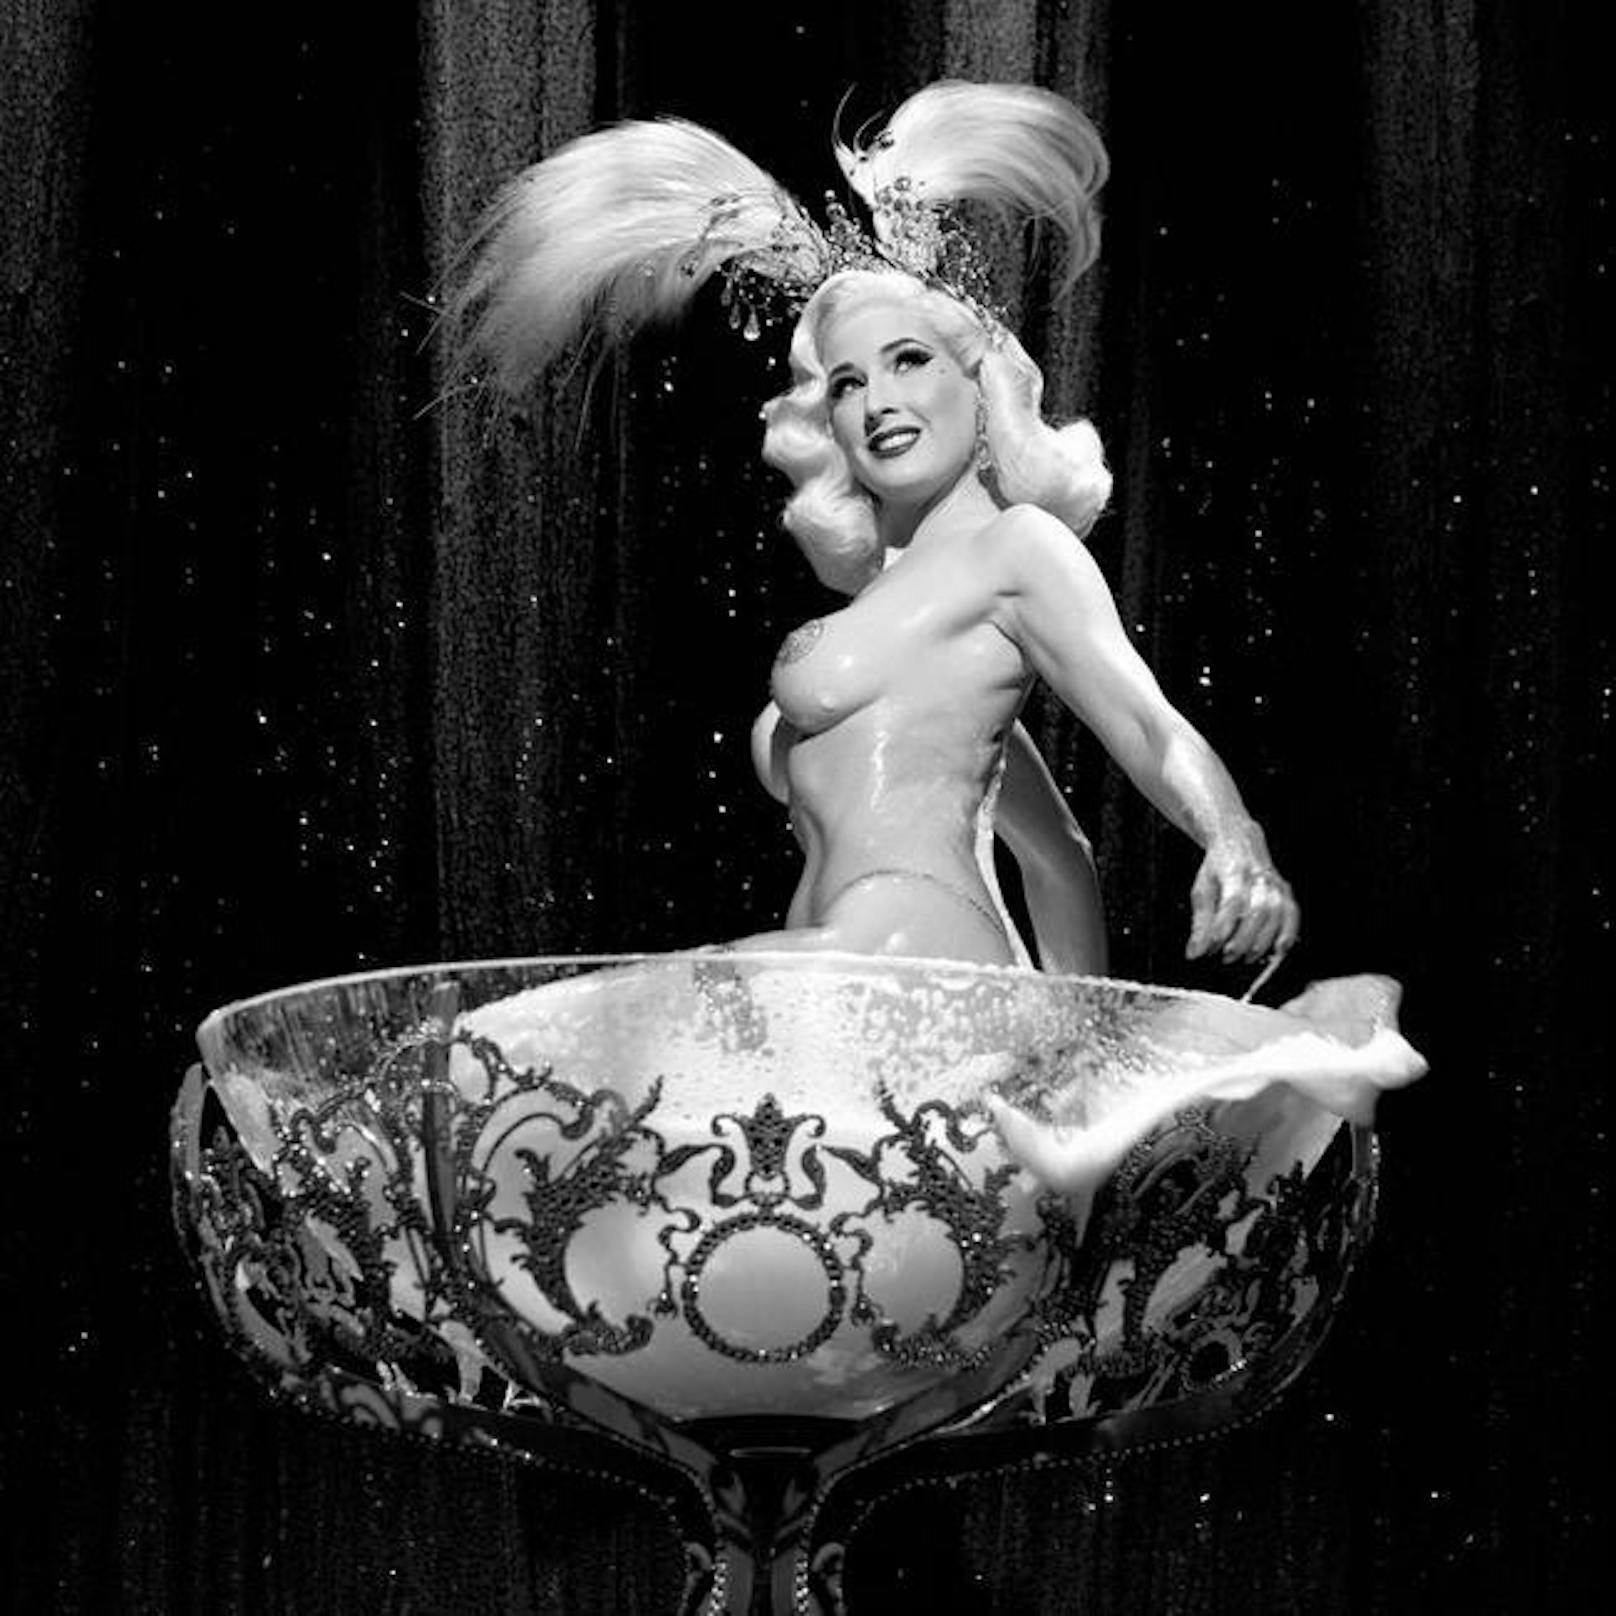 Burlesque-Königin Dita von Teese in ihrem berühmten Champagner-Glas